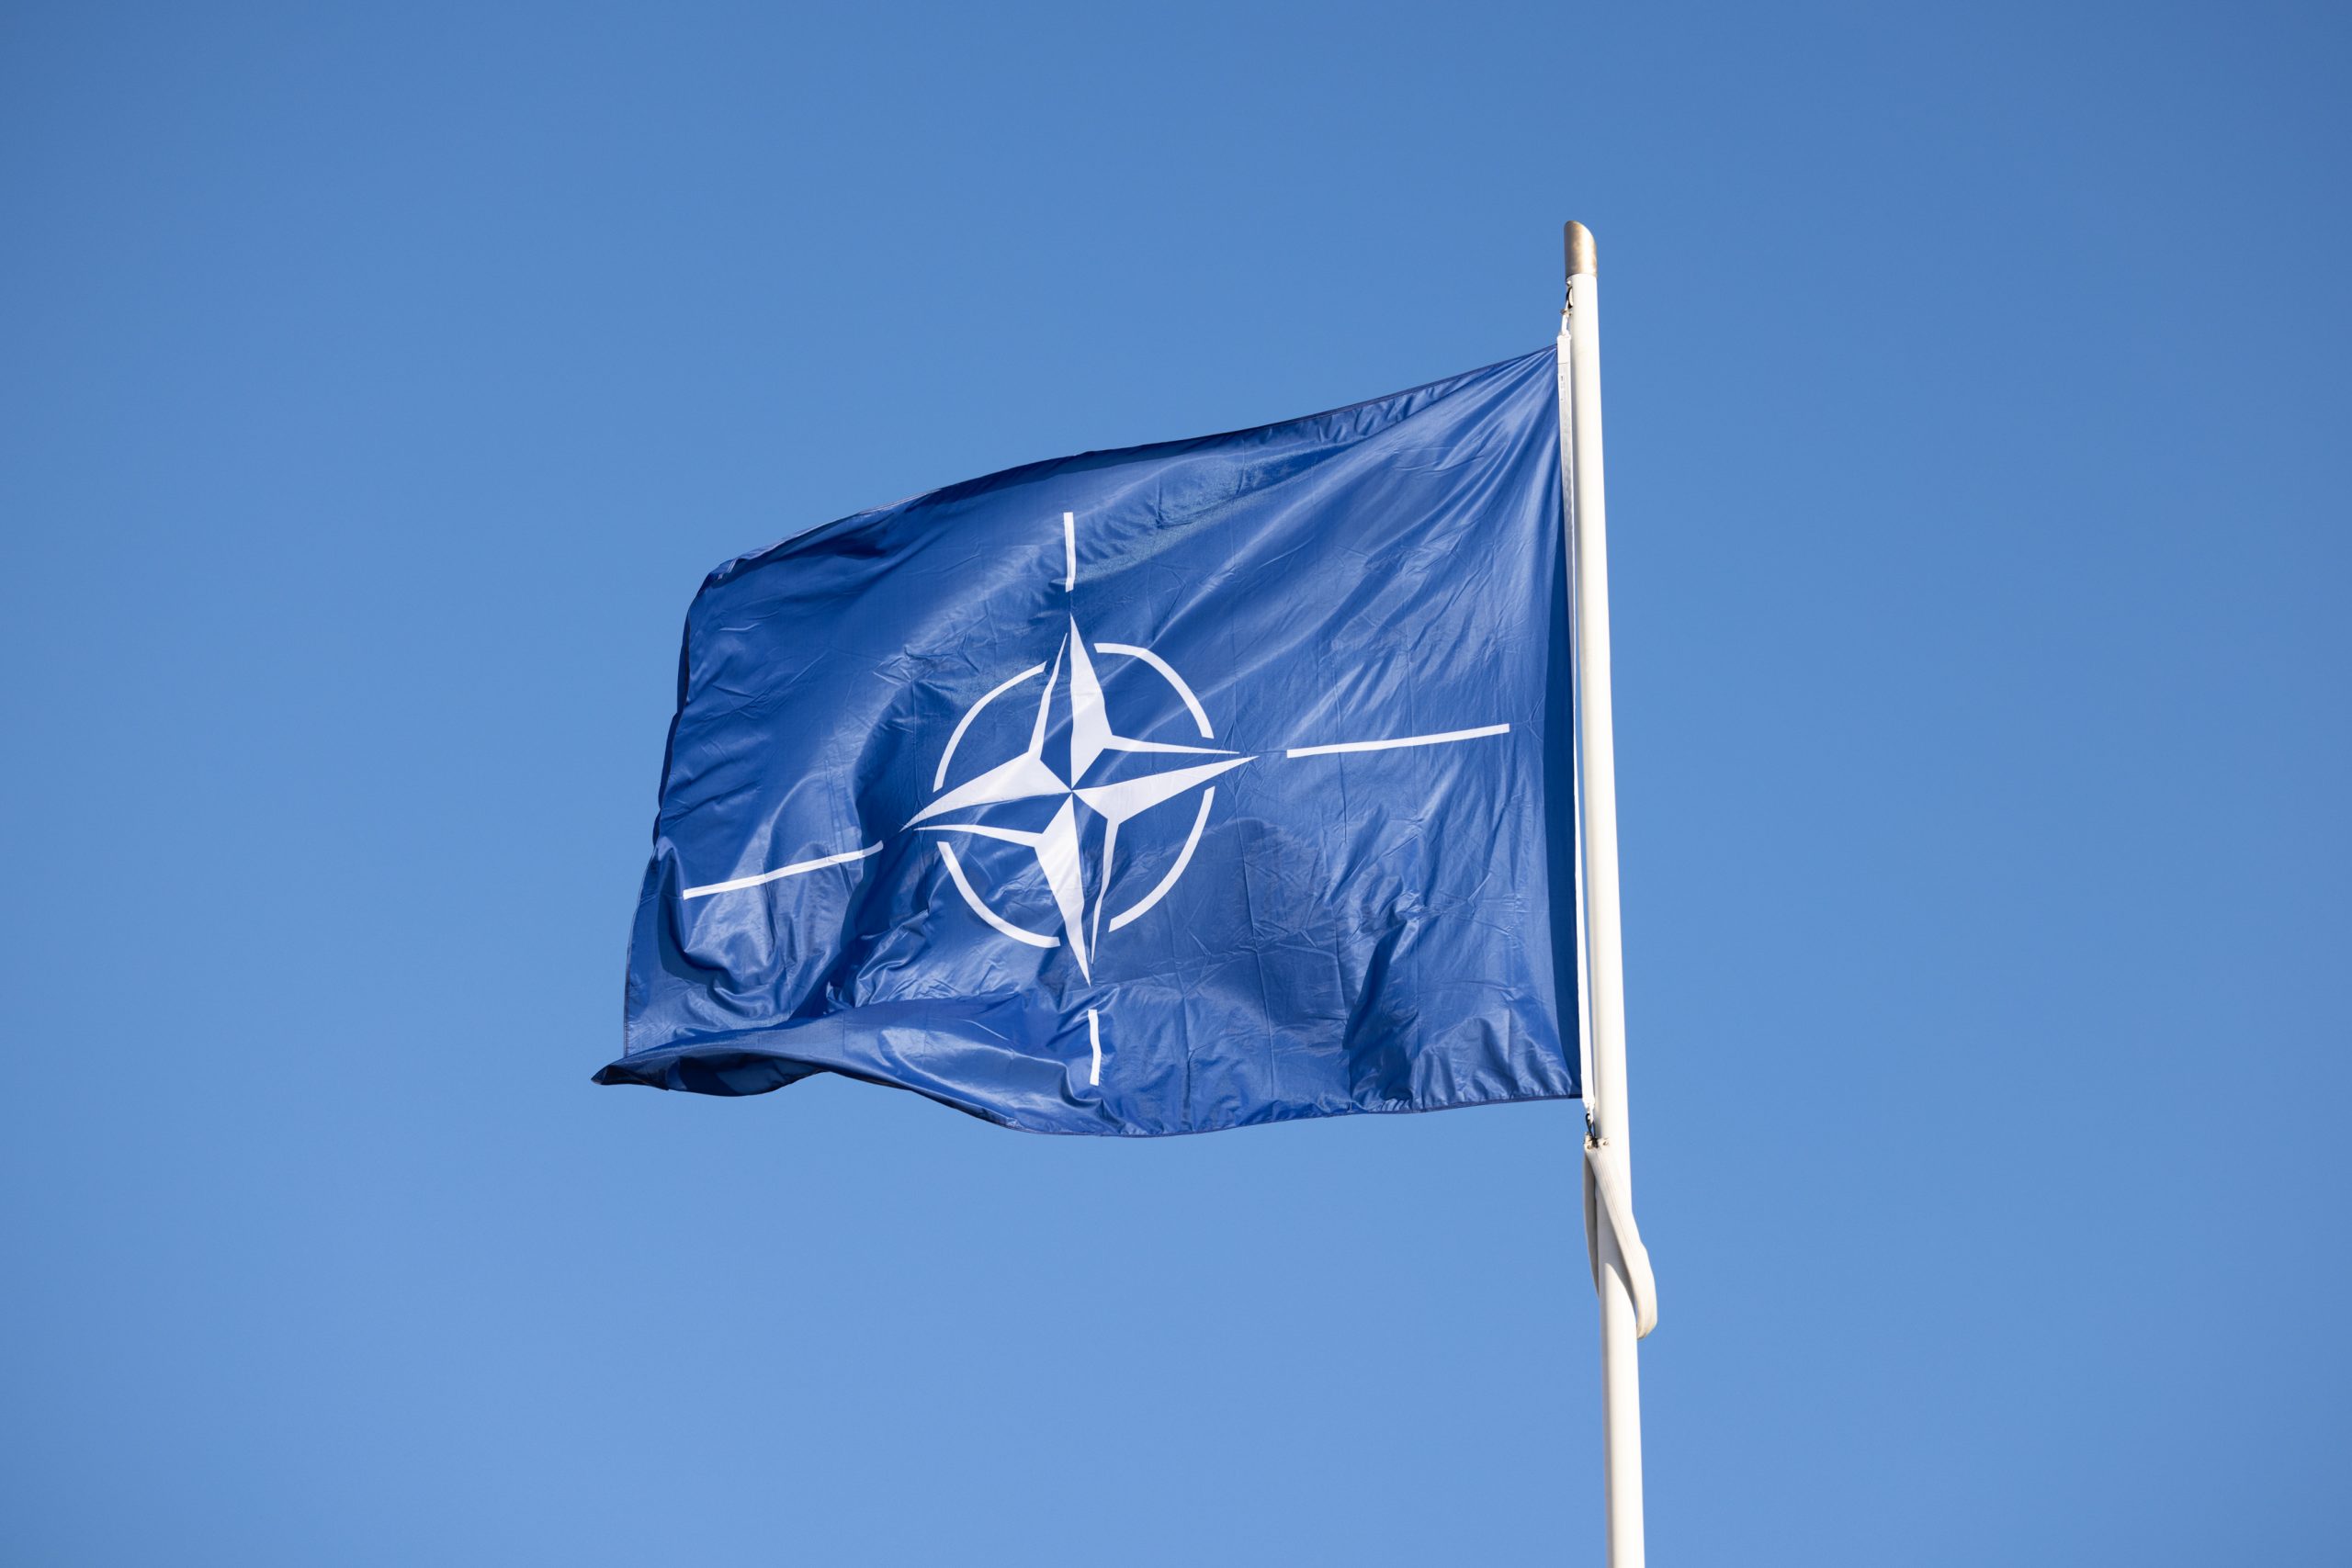 Mi a jelentősége Svédország NATO-csatlakozásának?